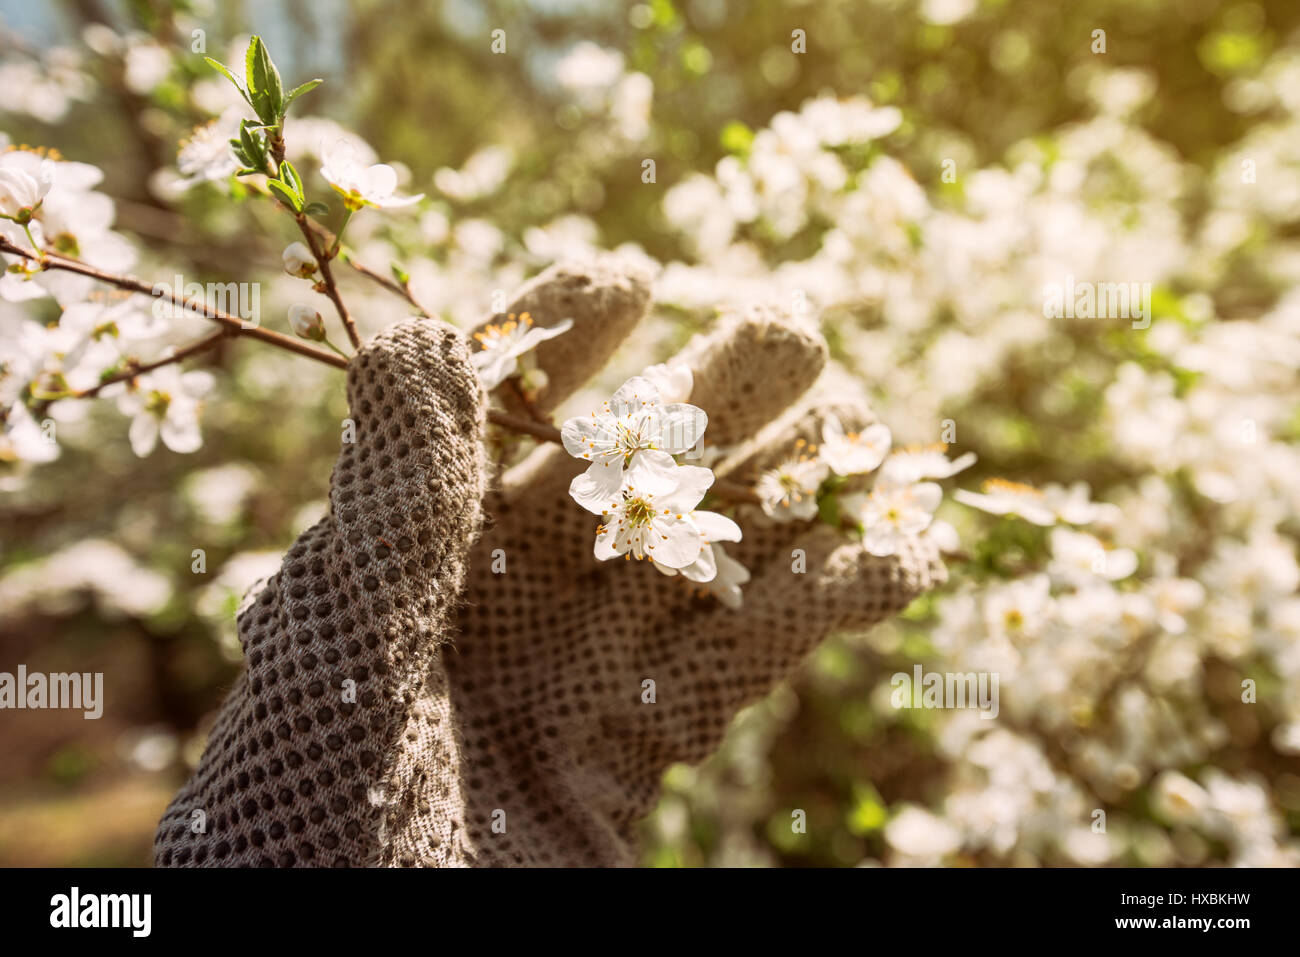 Gardener and blooming cherry tree branch, hand in glove examining flower development Stock Photo